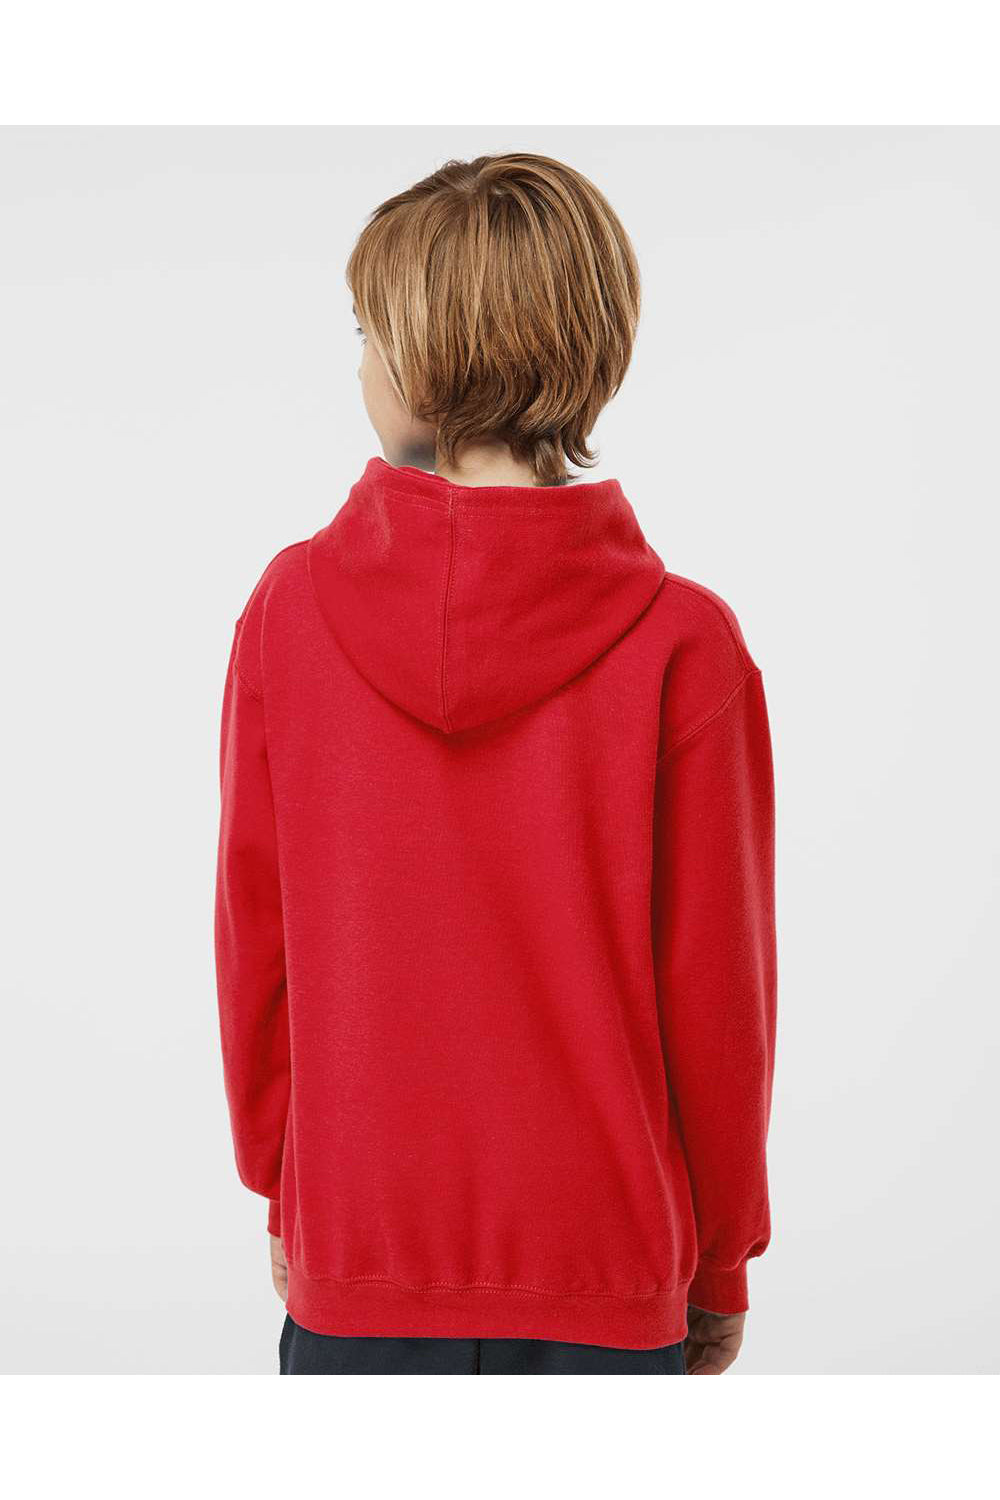 Tultex 320Y Youth Hooded Sweatshirt Hoodie Red Model Back